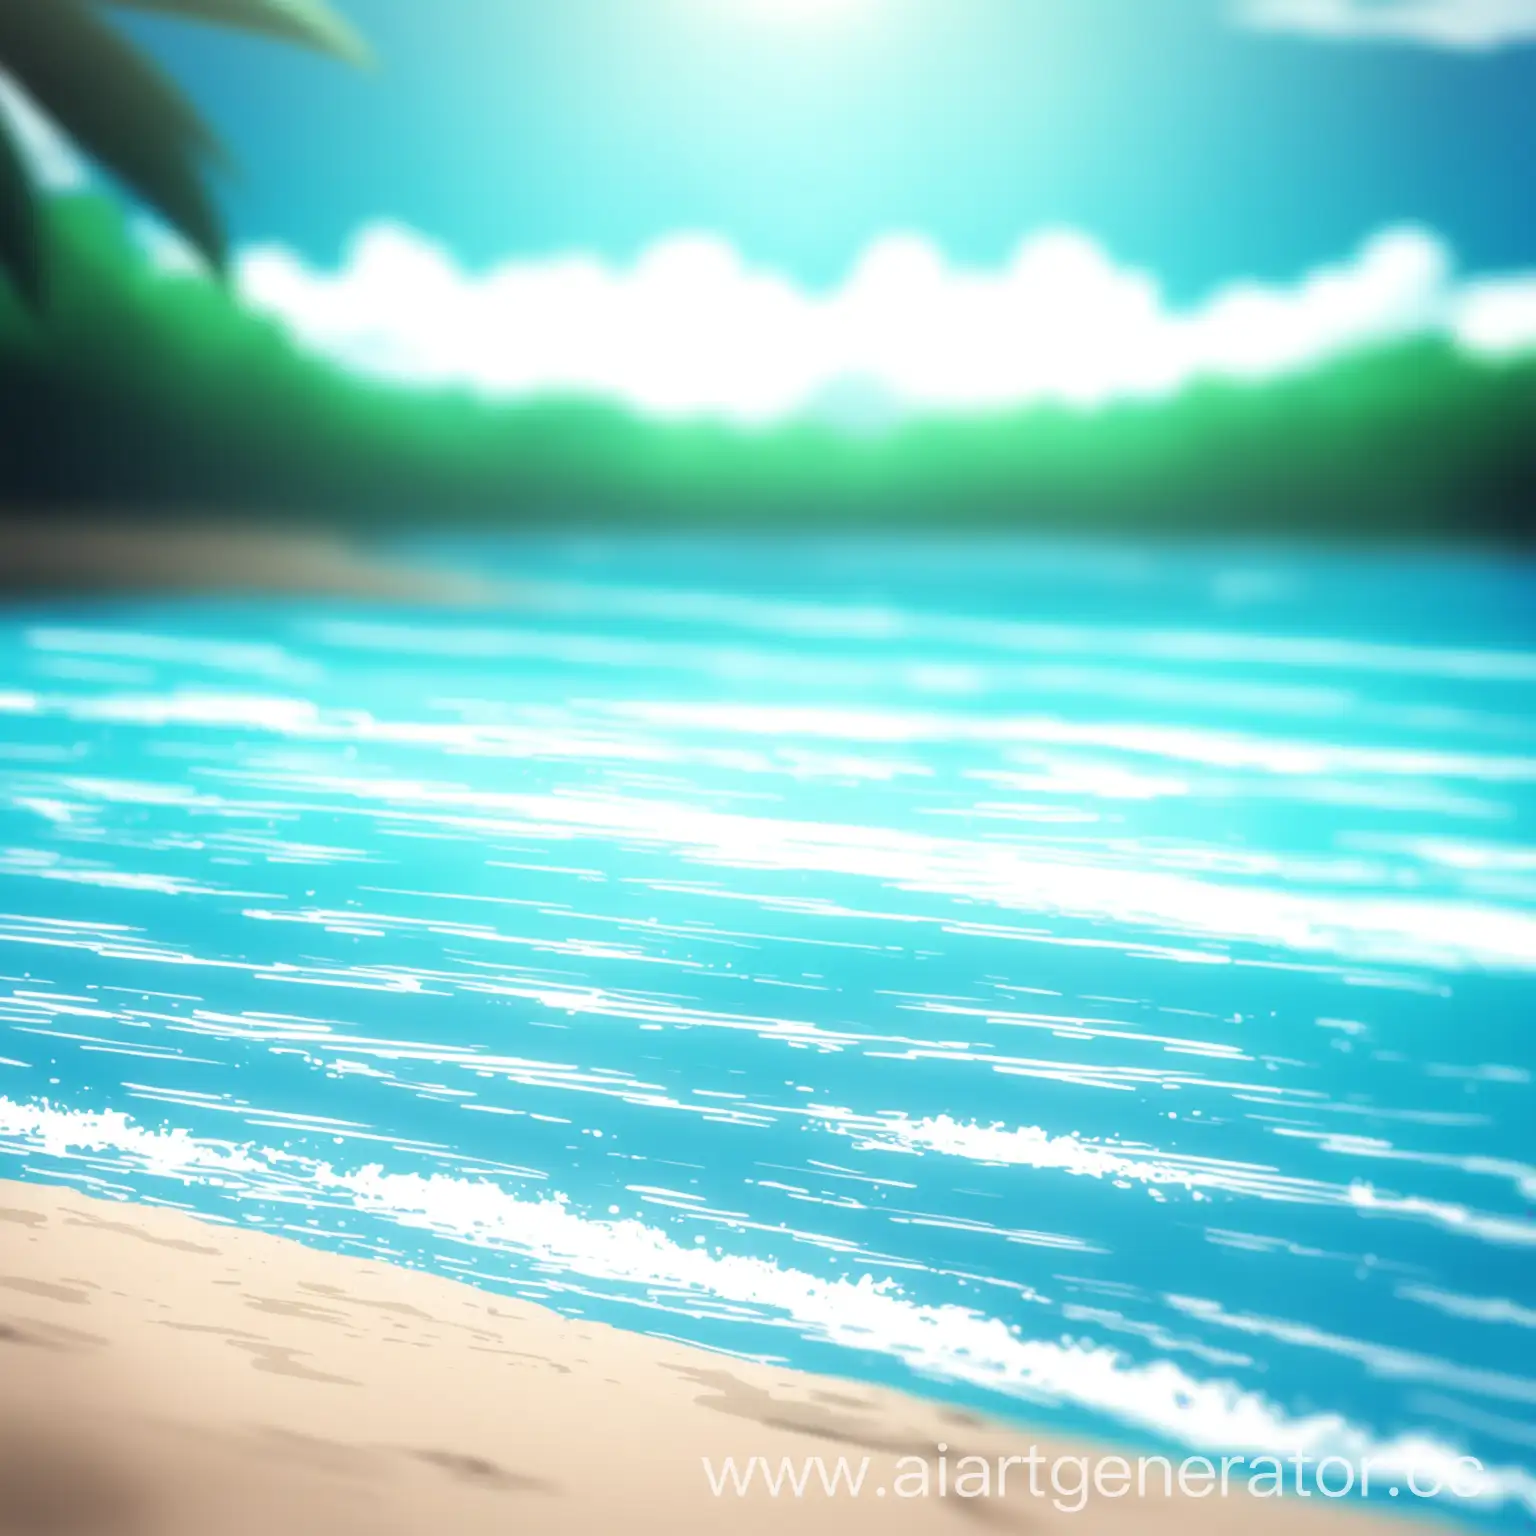 Пляж, голубая вода, размыто, аниме стиль